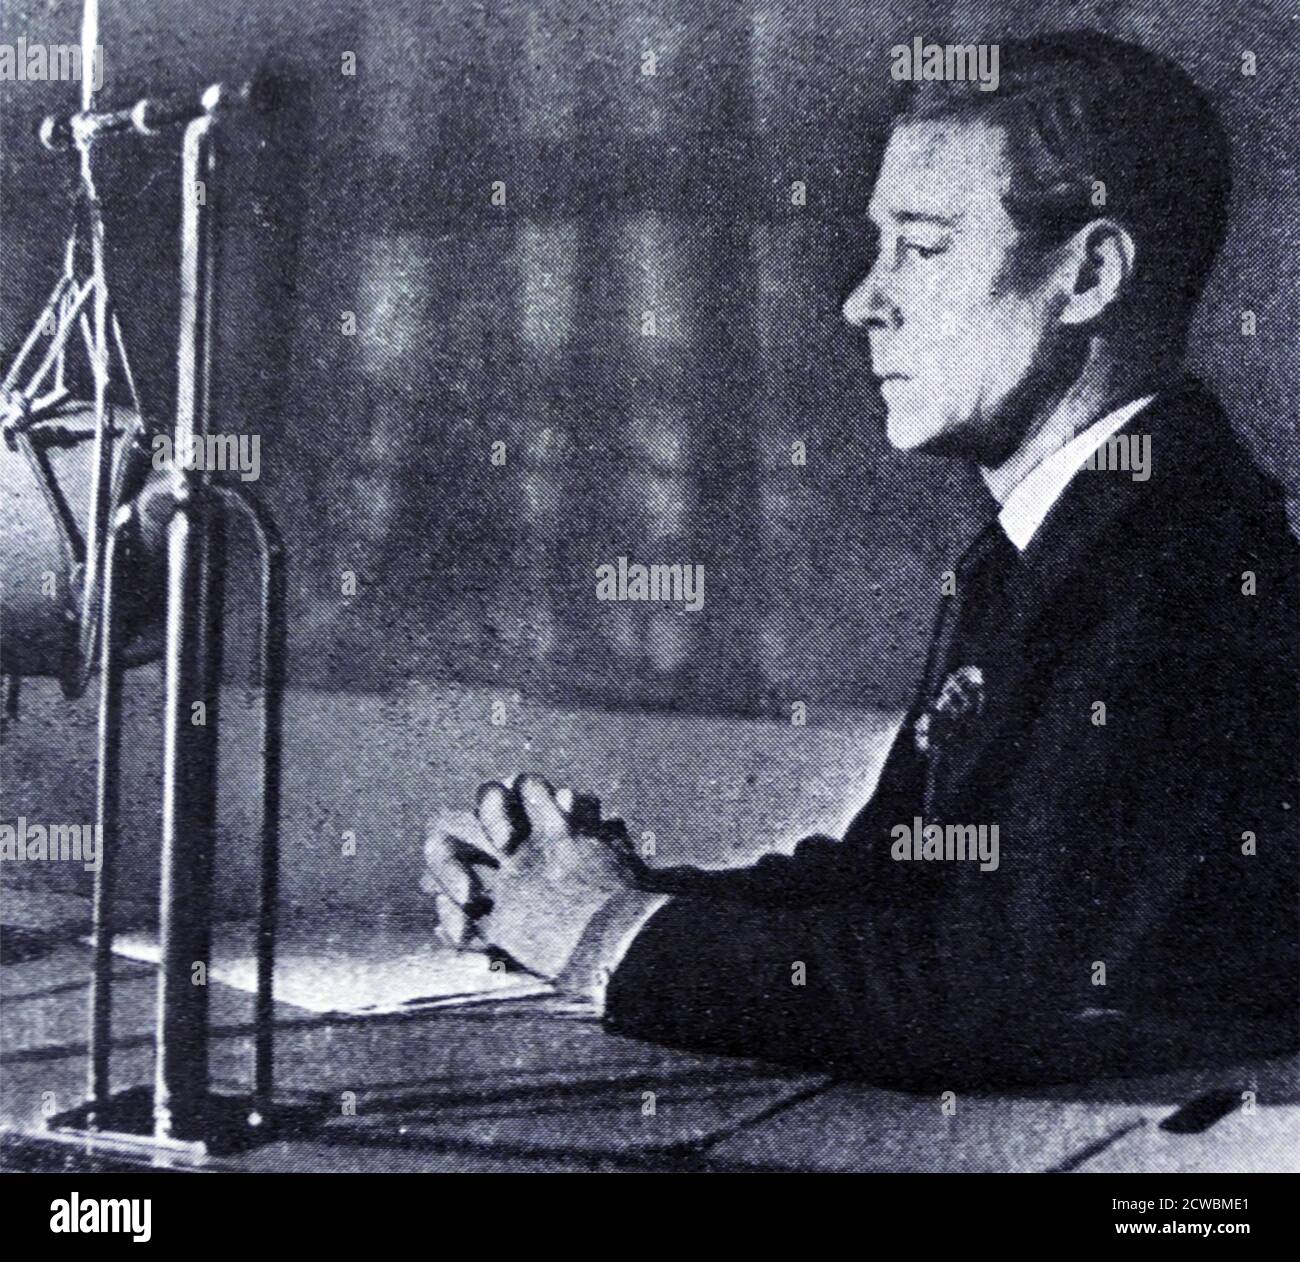 Fotografia in bianco e nero del re Edoardo VIII del Regno Unito (1894-1972) che ha dato il suo discorso radiofonico proclamando la sua abdicazione il 11 dicembre 1936. Foto Stock